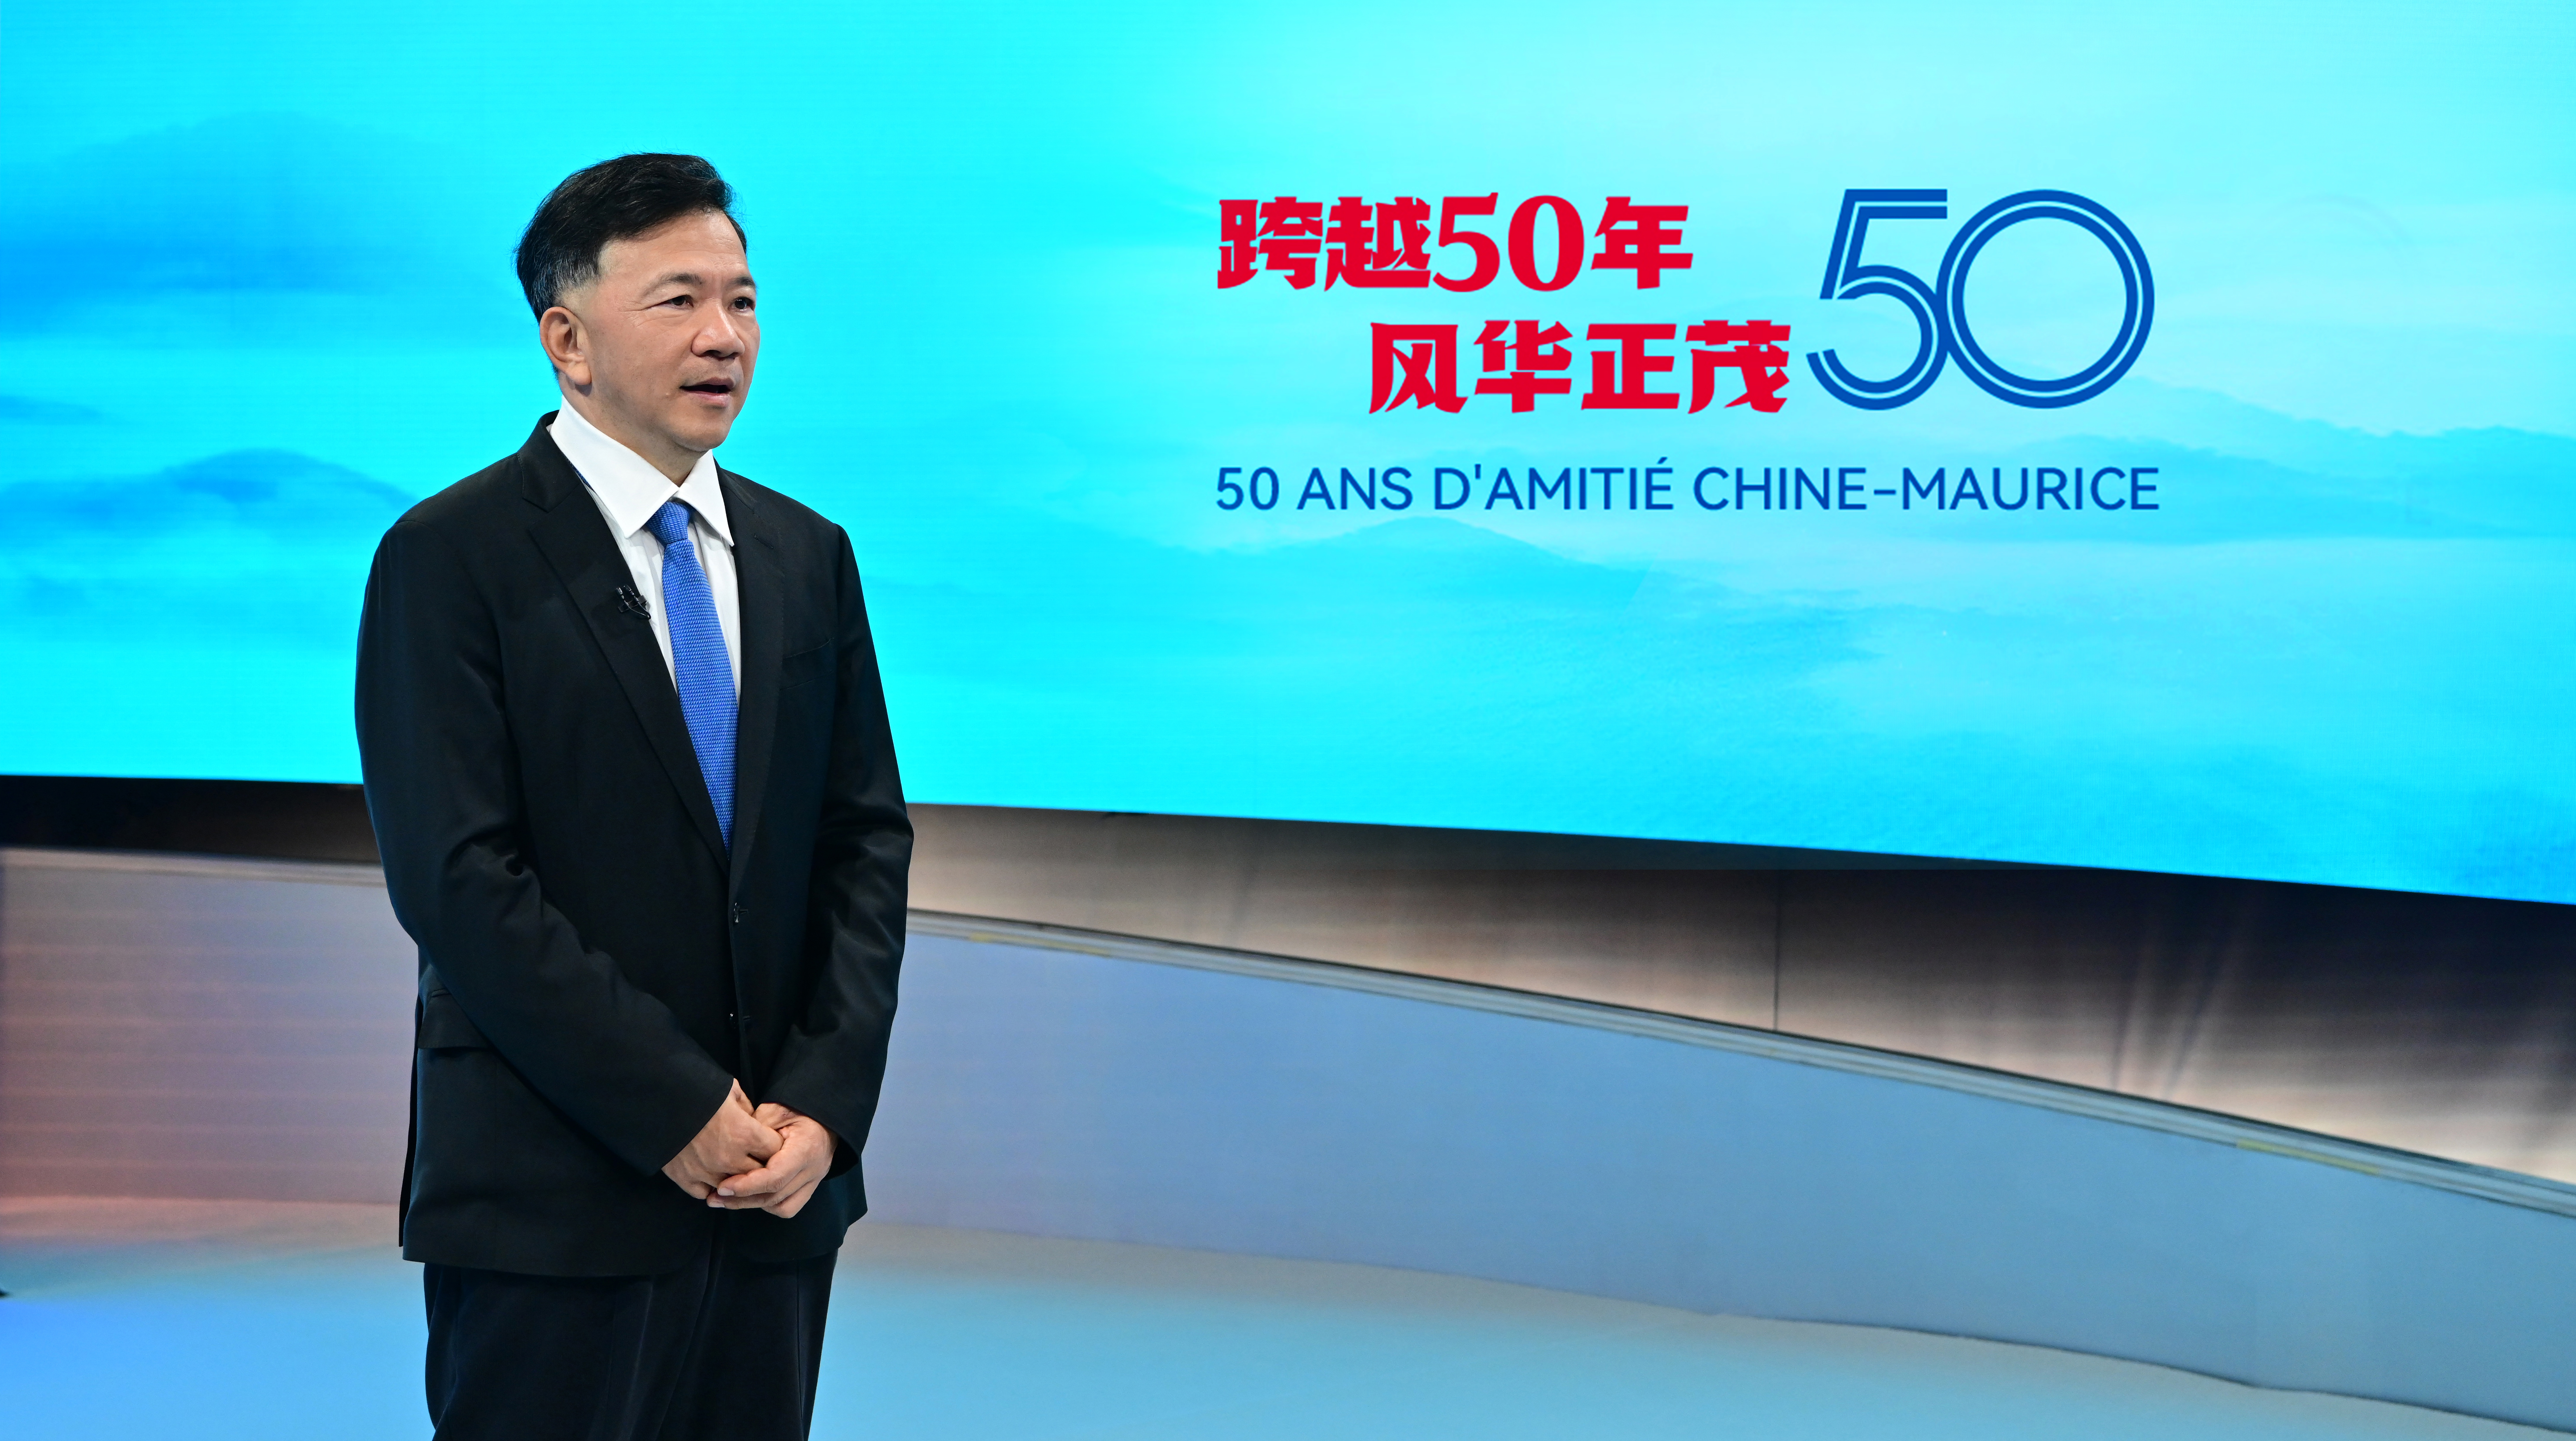 مجموعة الصين للإعلام وتلفزيون موريشيوس تطلقان فعالية بمناسبة الذكرى الخمسين لإقامة العلاقات الدبلوماسية بين البلدين